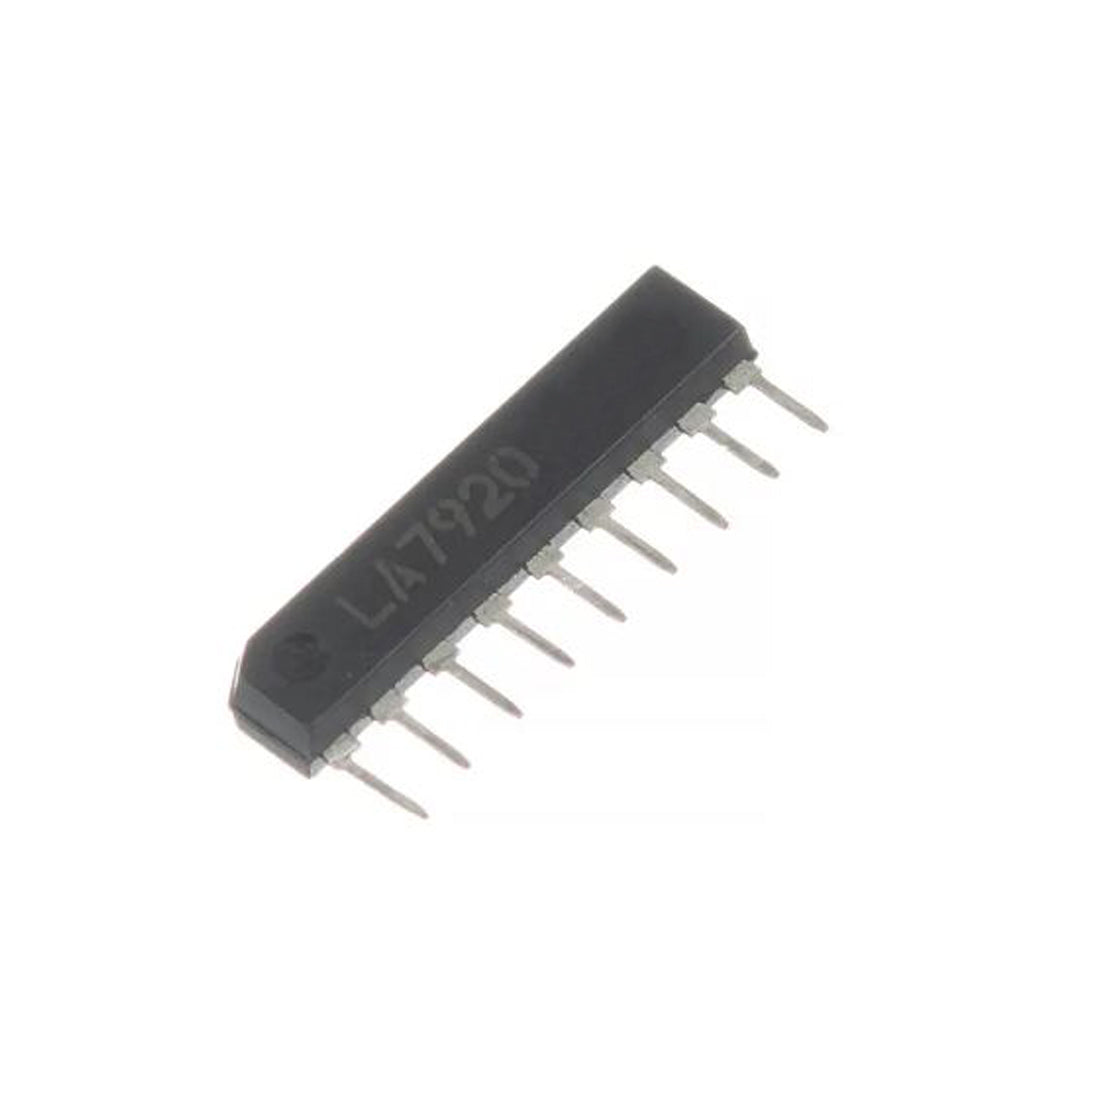 LA7920 componente elettronico, circuito integrato, transistor, 9 contatti